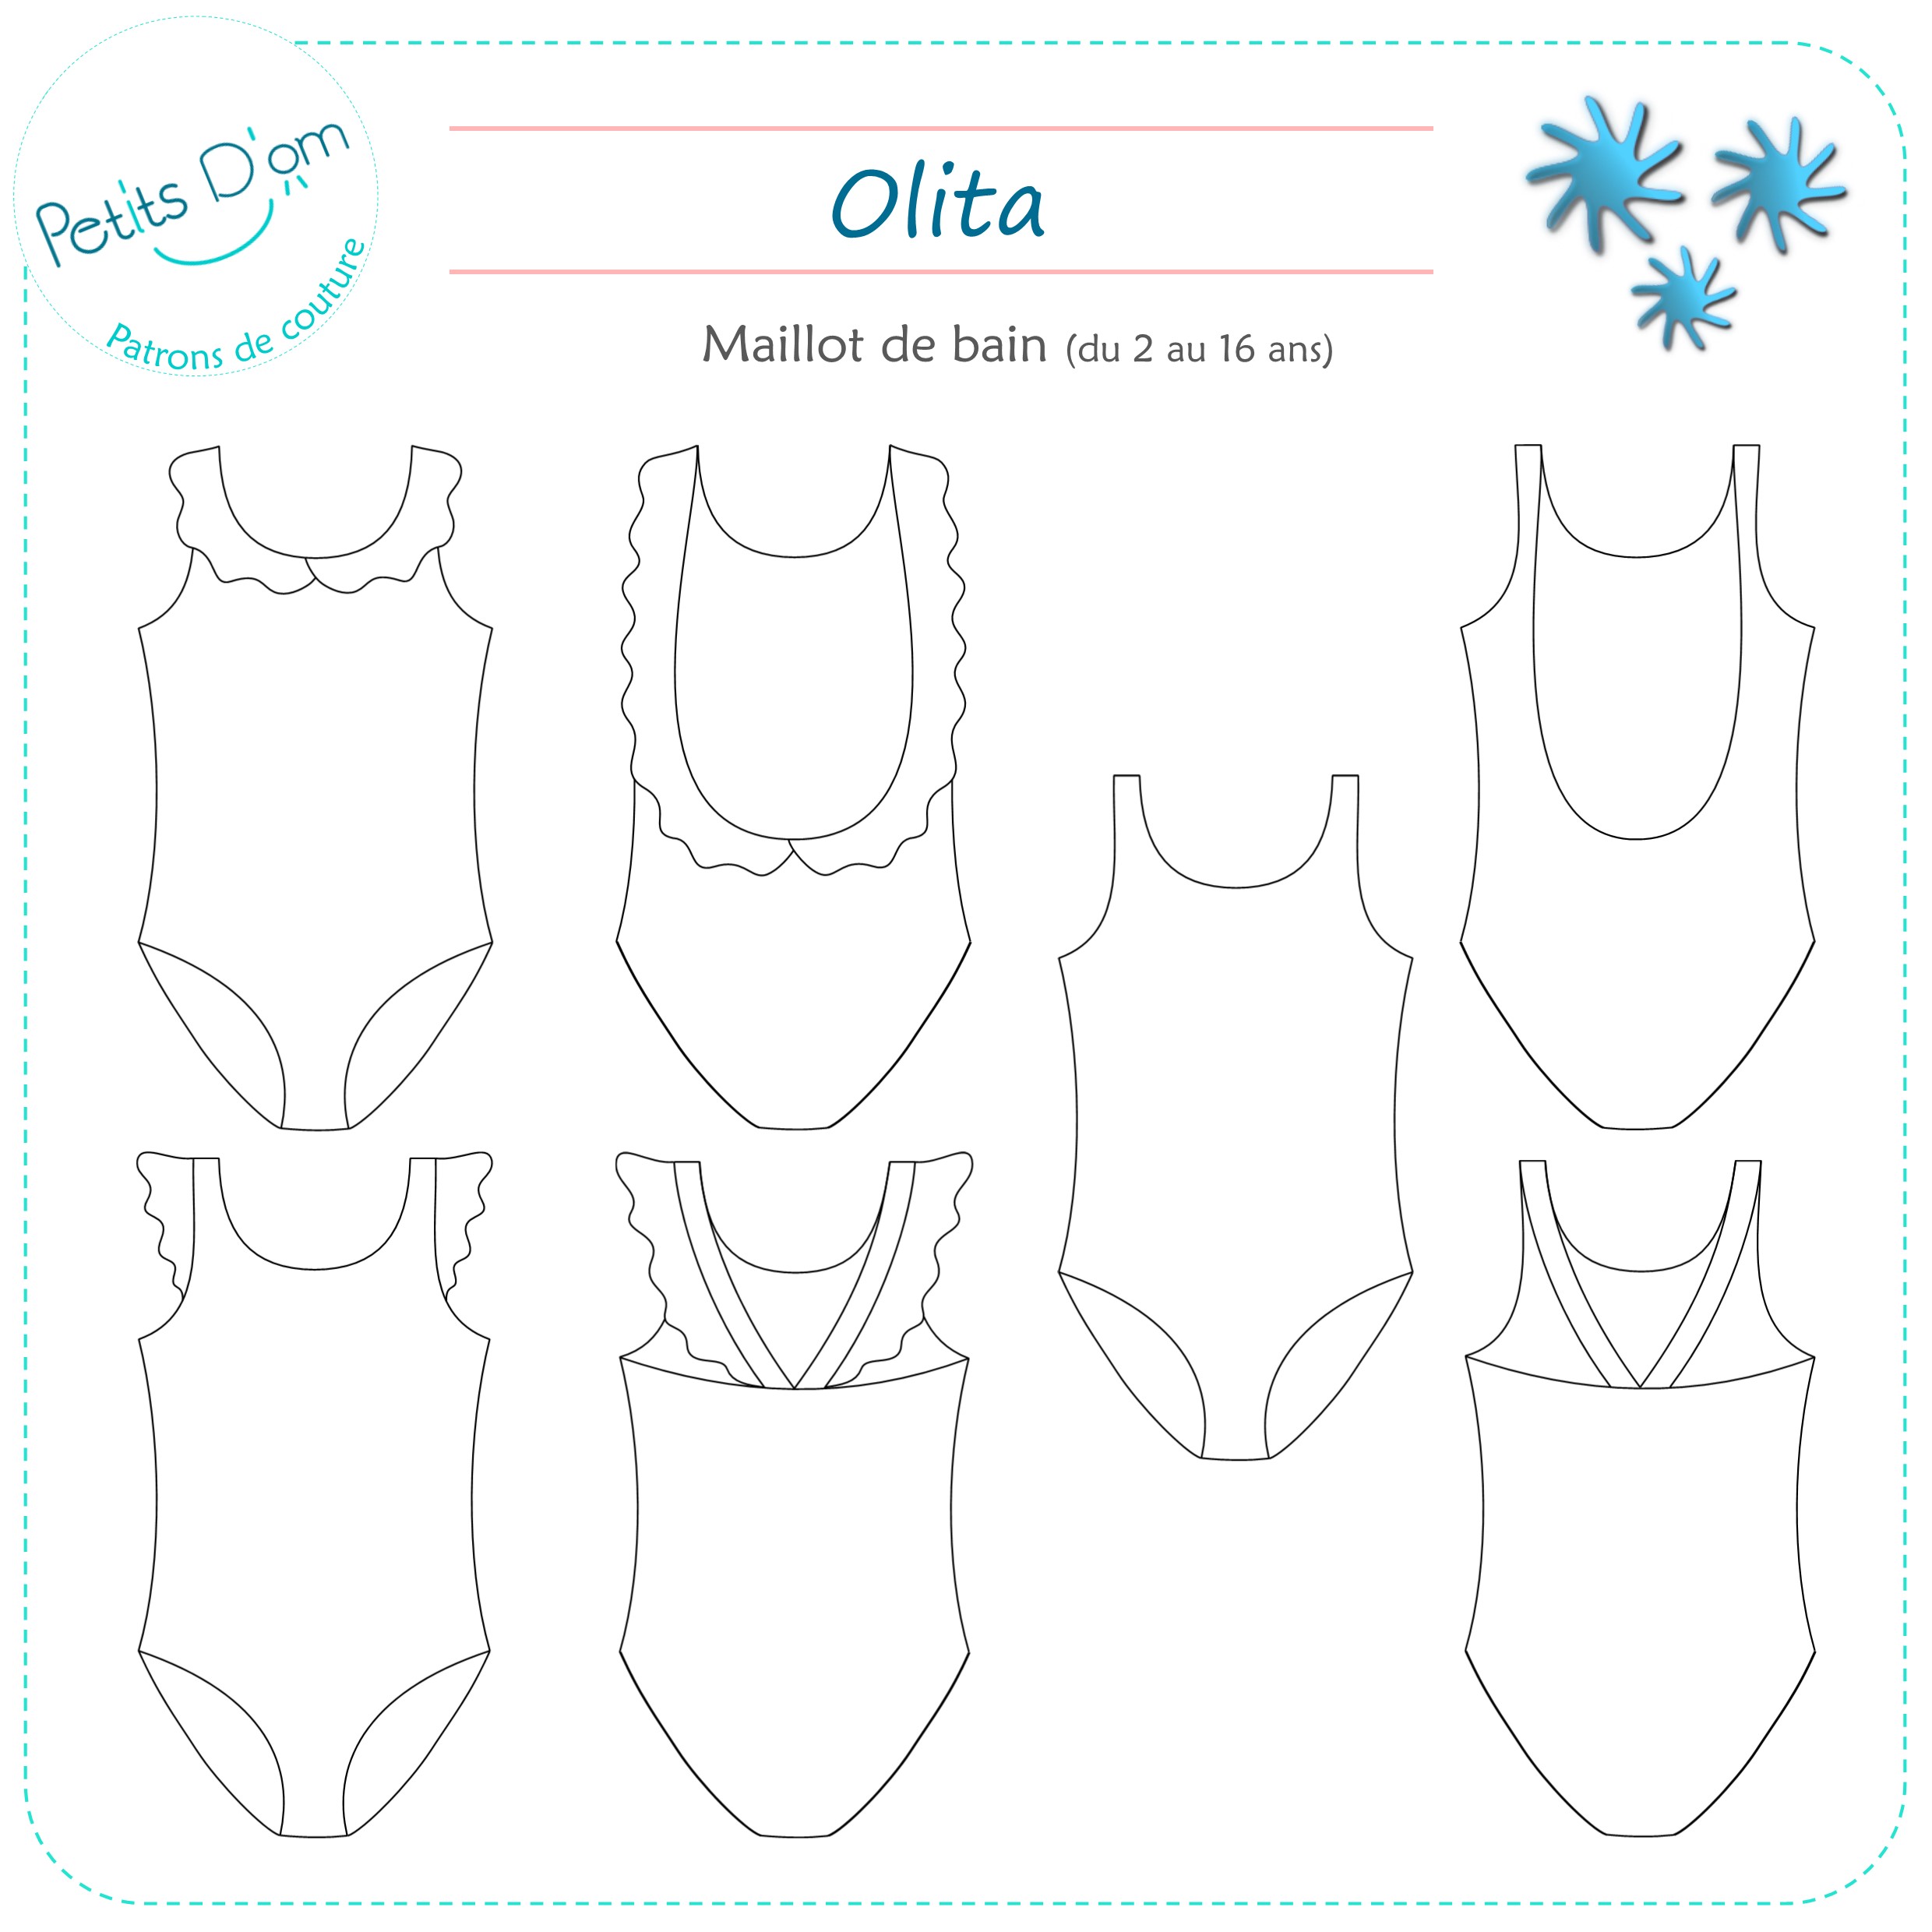 OLITA – Patron maillot de bain fille du 2 au 16 ans - Petits D'om